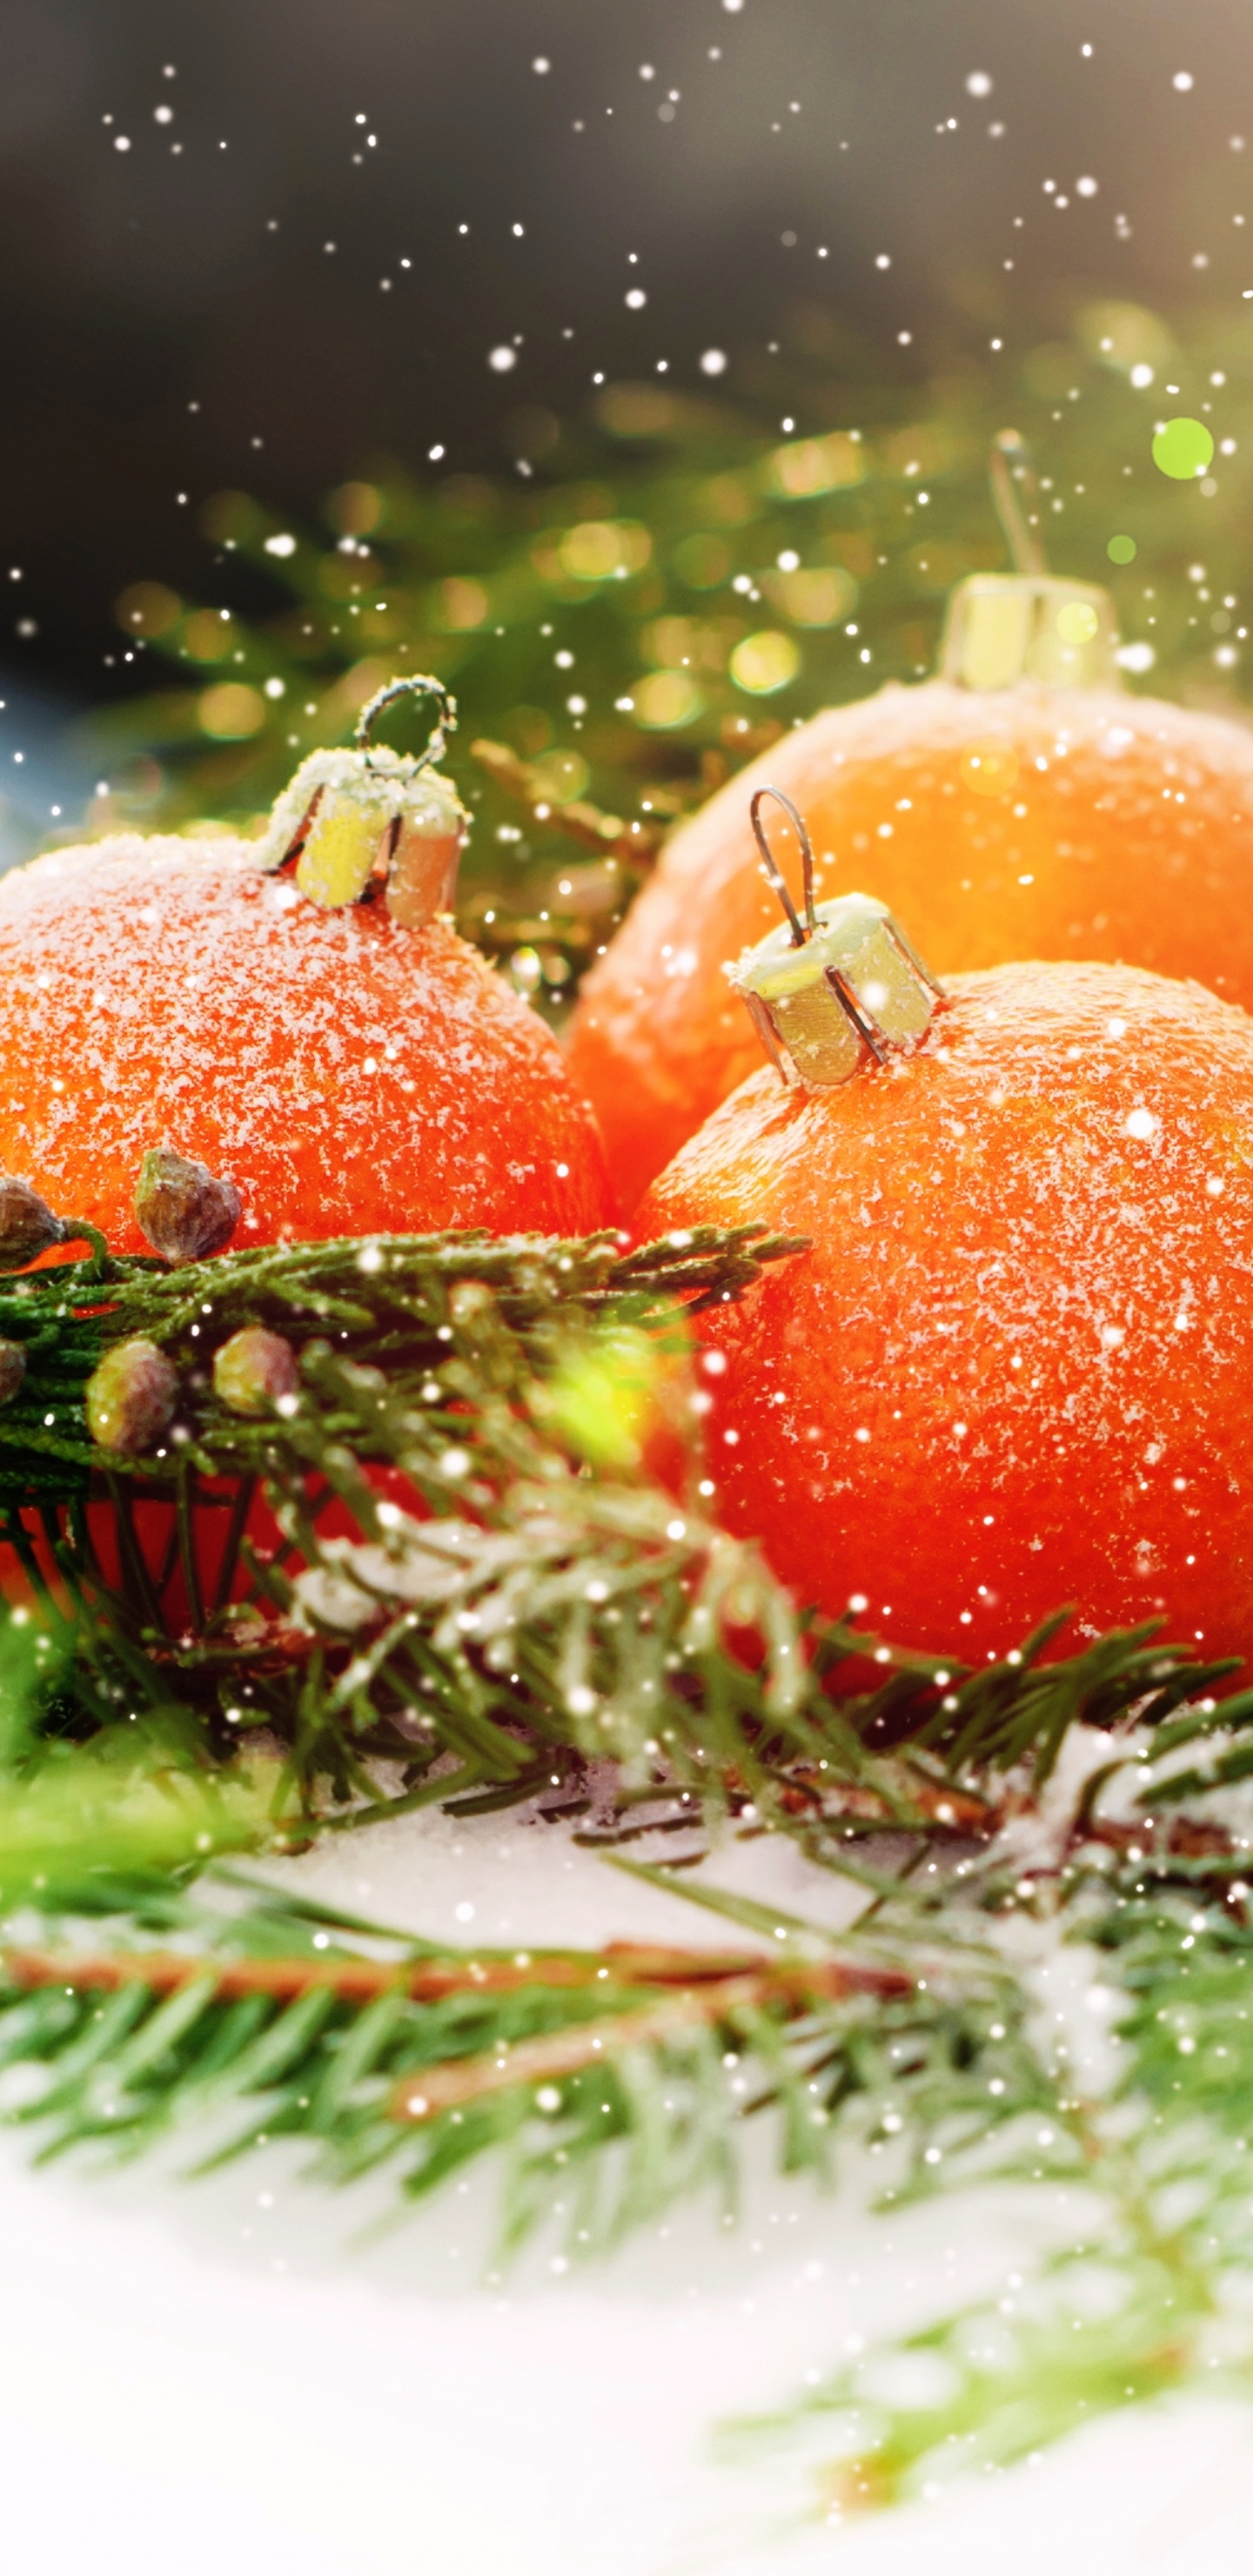 El Día De Navidad, Nochevieja, la Comida Vegetariana, Alimento, Vegetal. Wallpaper in 1440x2960 Resolution